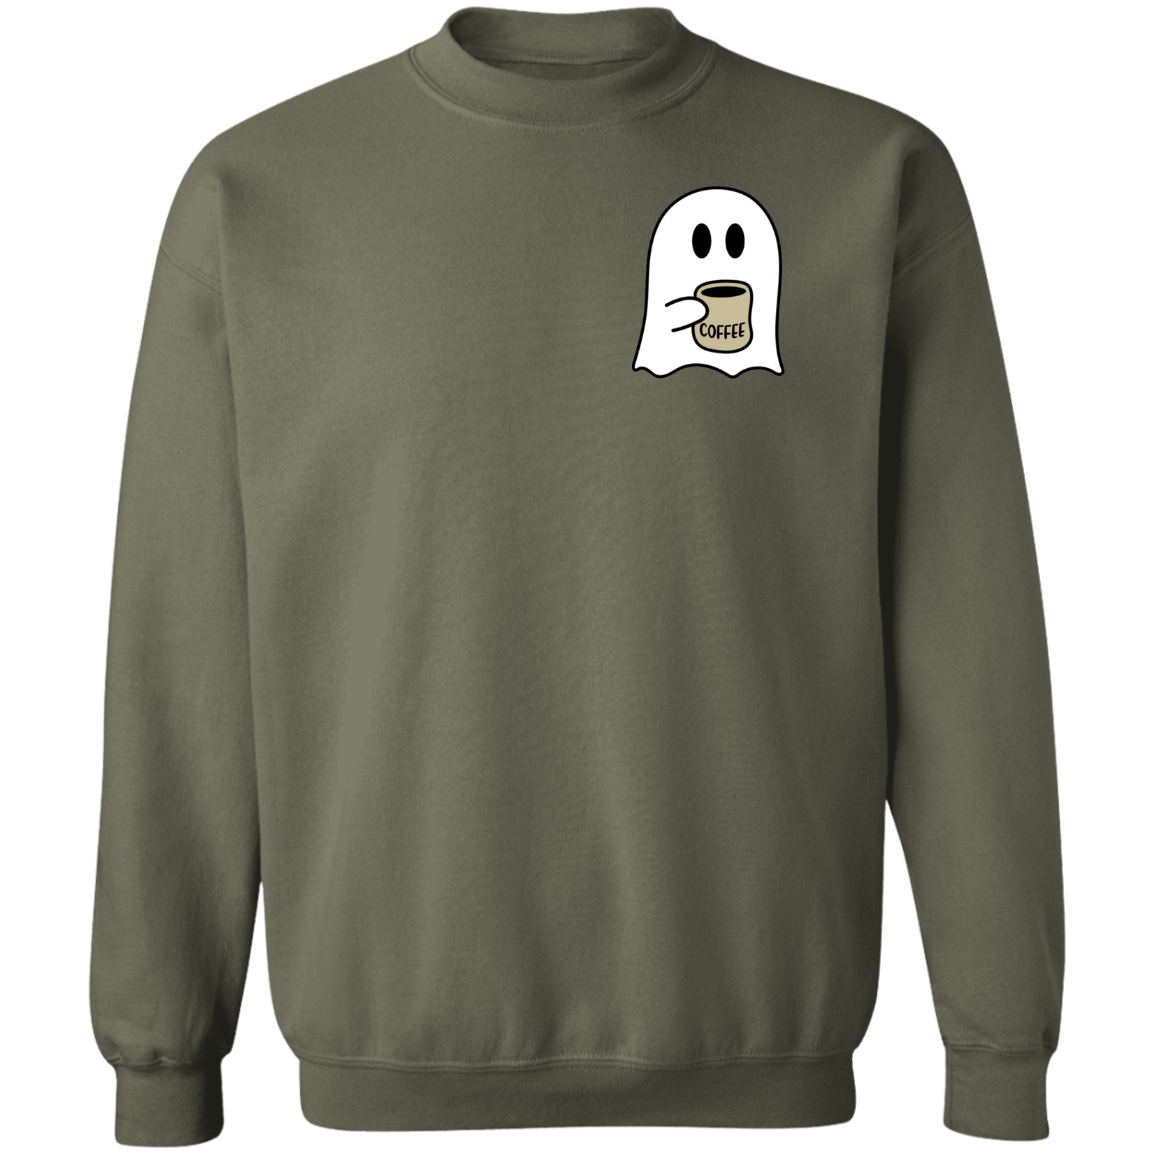 Spooky Coffee Sweatshirt